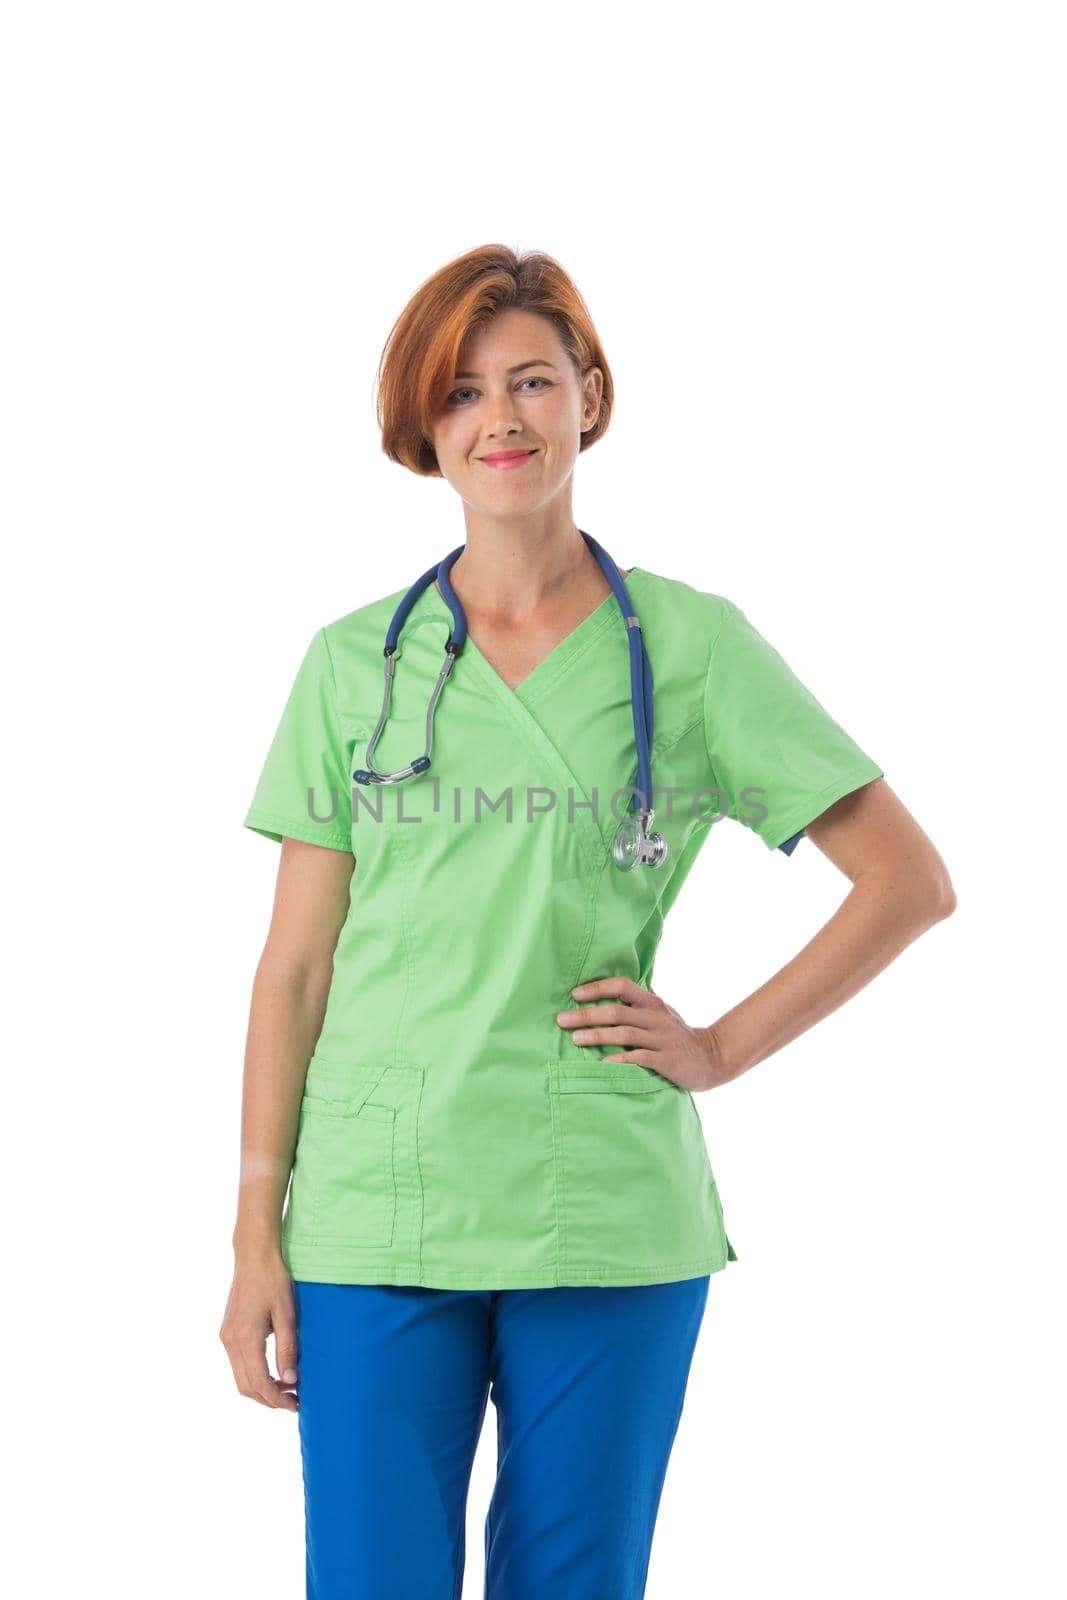 Medical nurse isolated on white background. Female medical professional doctor smiling happy and joyful